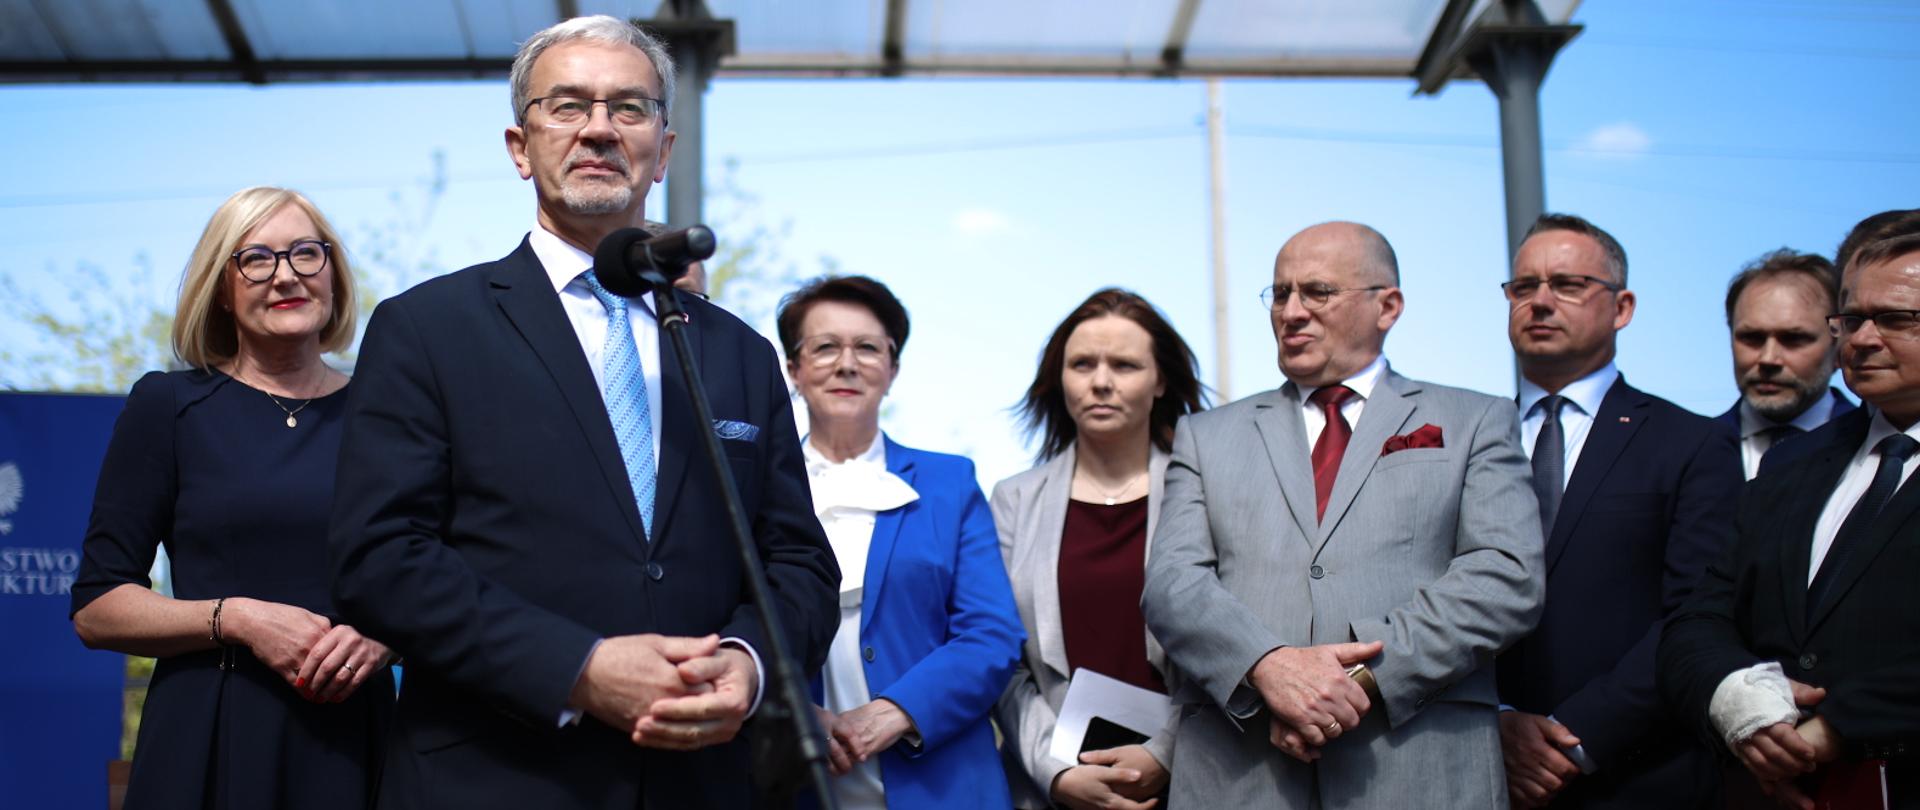 Minister Jerzy Kwieciński stoi przy mikrofonie. Za nim stoją pozostali uczestnicy przemówienia. 